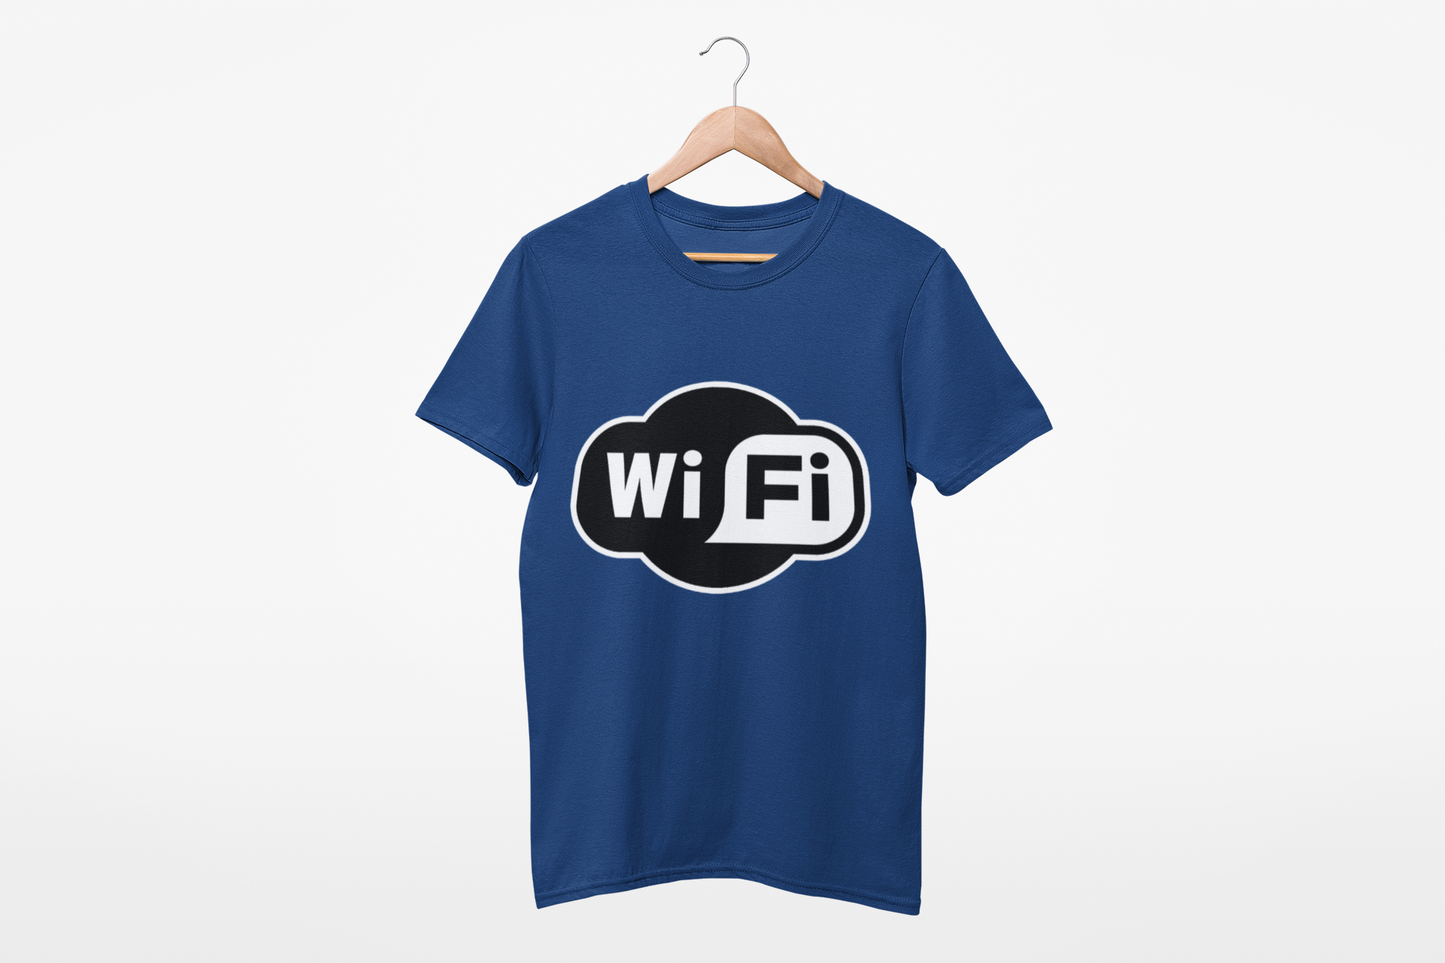 WiFi T shirt